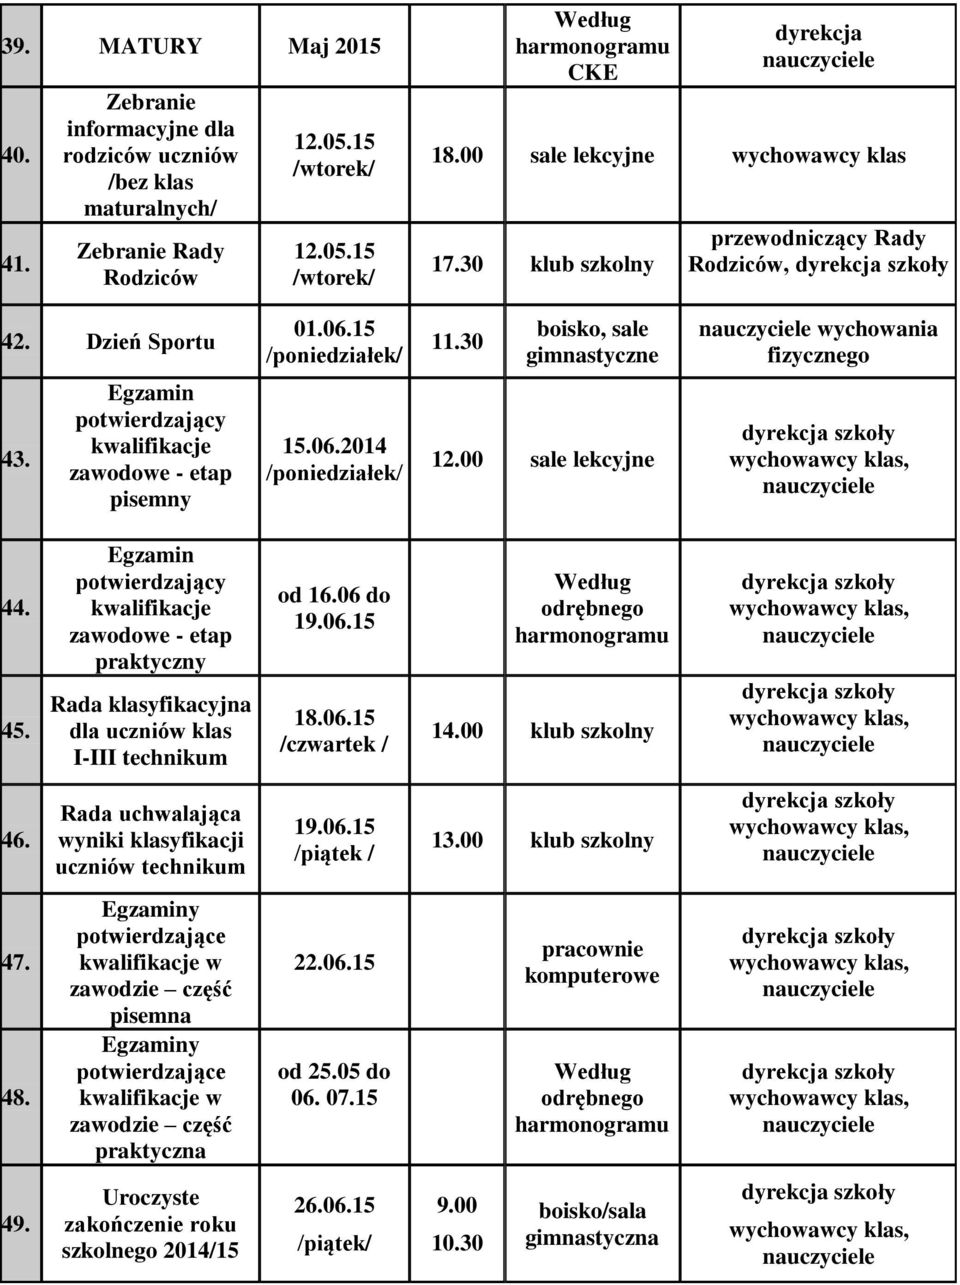 kwalifikacje zawodowe - etap praktyczny Rada klasyfikacyjna dla uczniów klas I-III technikum od 16.06 do 19.06.15 18.06.15 /czwartek / odrębnego 14.00 klub szkolny 46.